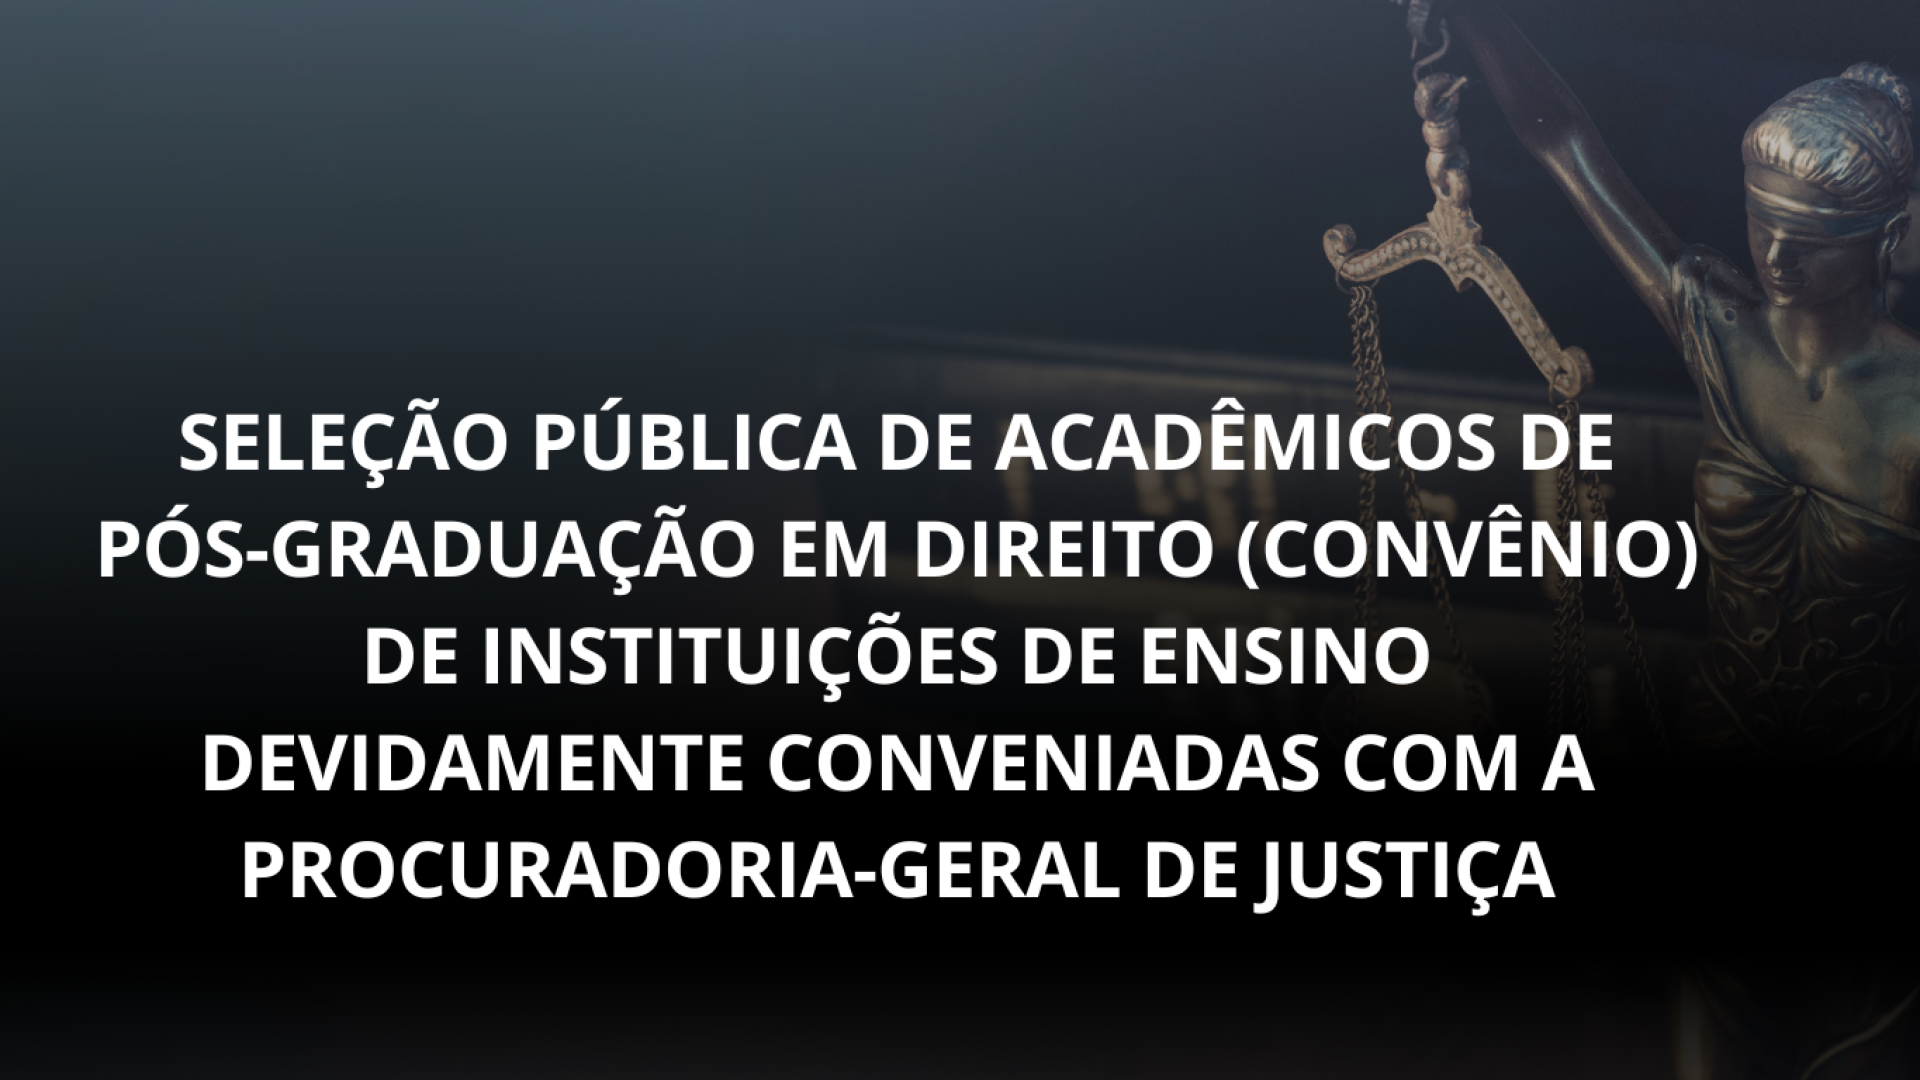 Seleção pública de acadêmicos de PÓS-GRADUAÇÃO EM DIREITO (Convênio) de instituições de ensino devidamente conveniadas com a Procuradoria-Geral de Justiça